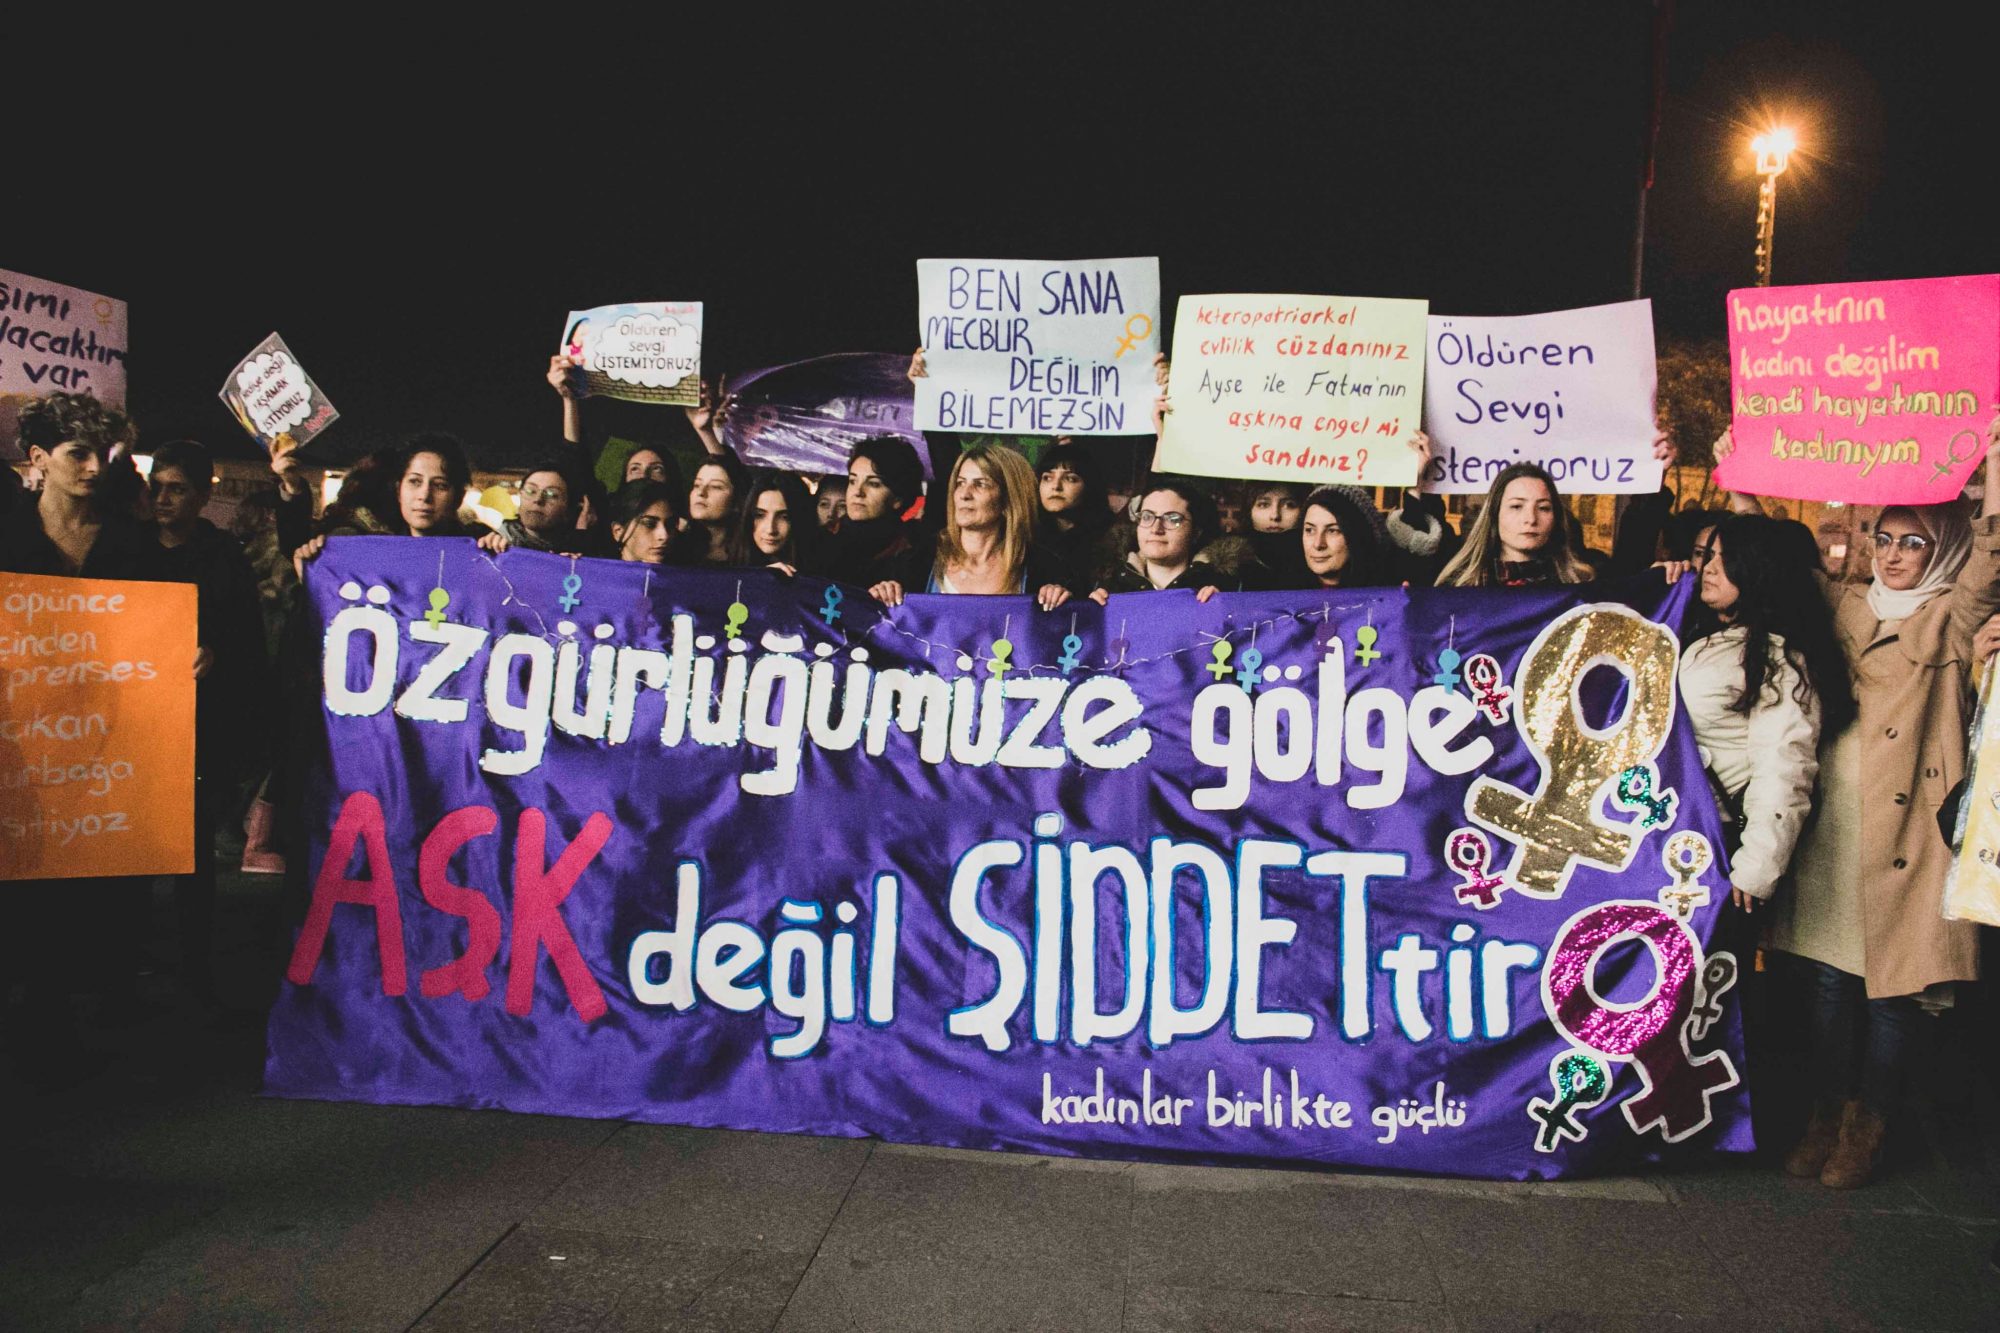 Kadınlar Sevgililer Günü’nde Kadıköy’de eylem düzenledi: “Özgürlüğümüze gölge aşk değil, şiddettir”